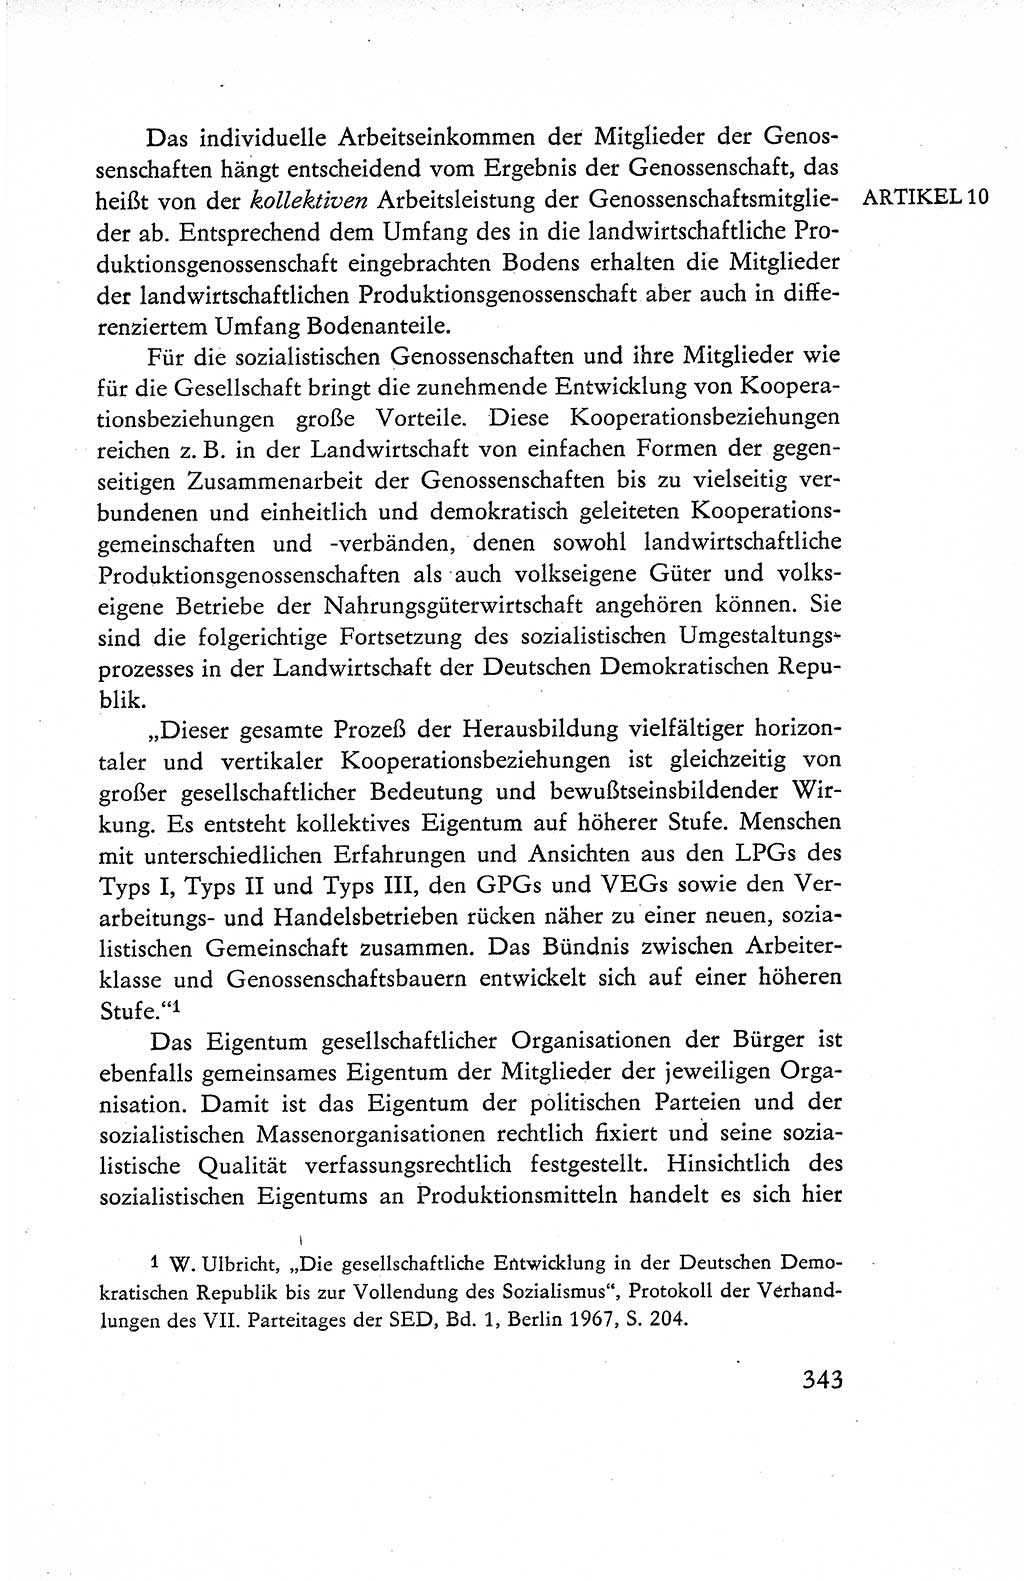 Verfassung der Deutschen Demokratischen Republik (DDR), Dokumente, Kommentar 1969, Band 1, Seite 343 (Verf. DDR Dok. Komm. 1969, Bd. 1, S. 343)